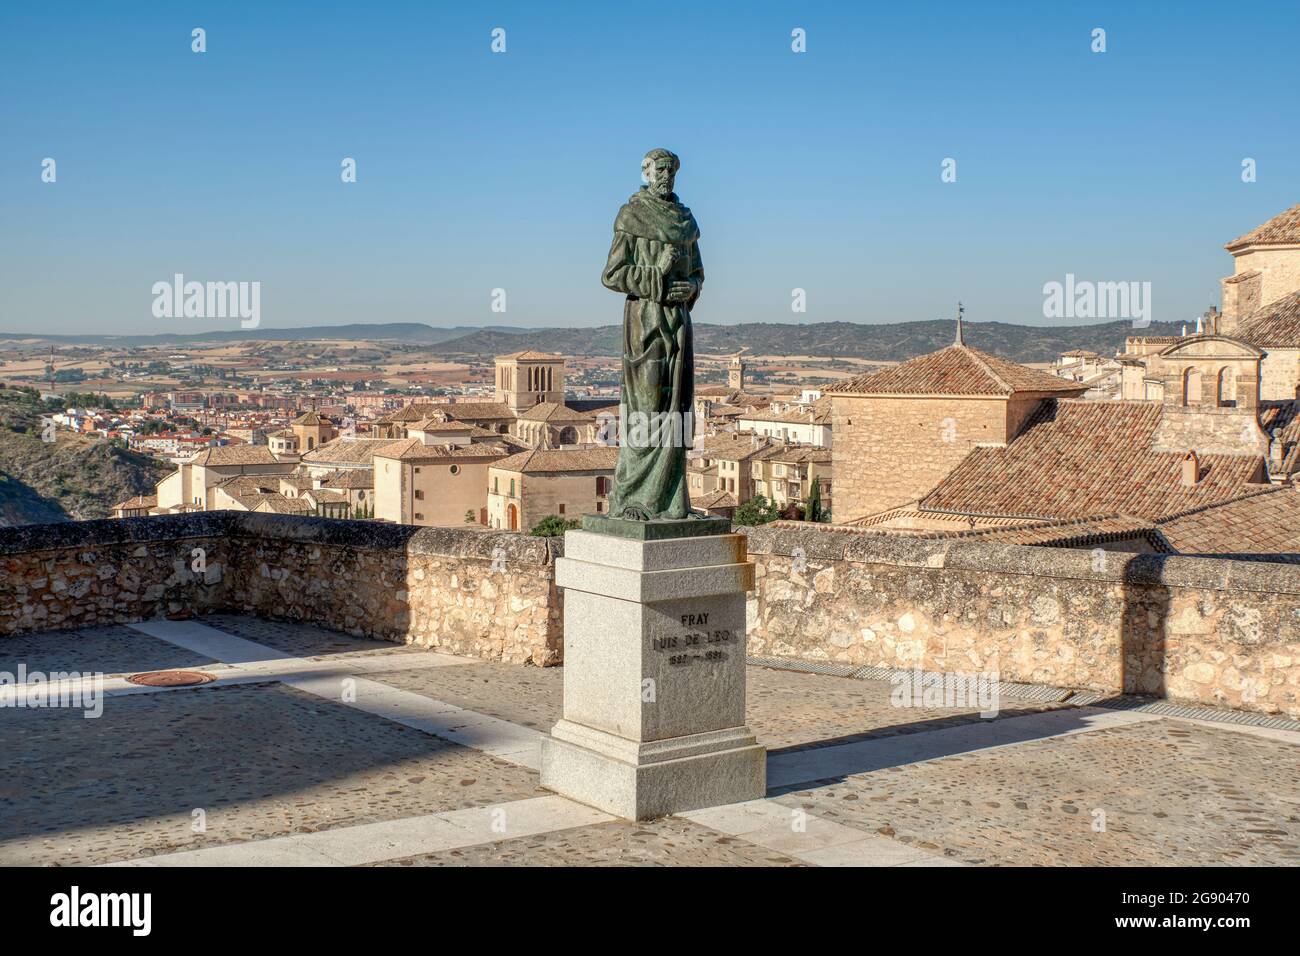 Escultura de Fray Luis de León realizada en bronce por el escultor Javier Barrios y la iglesia de San Pedro en el fondo. Cuenca, Castilla la Mancha, España Foto de stock